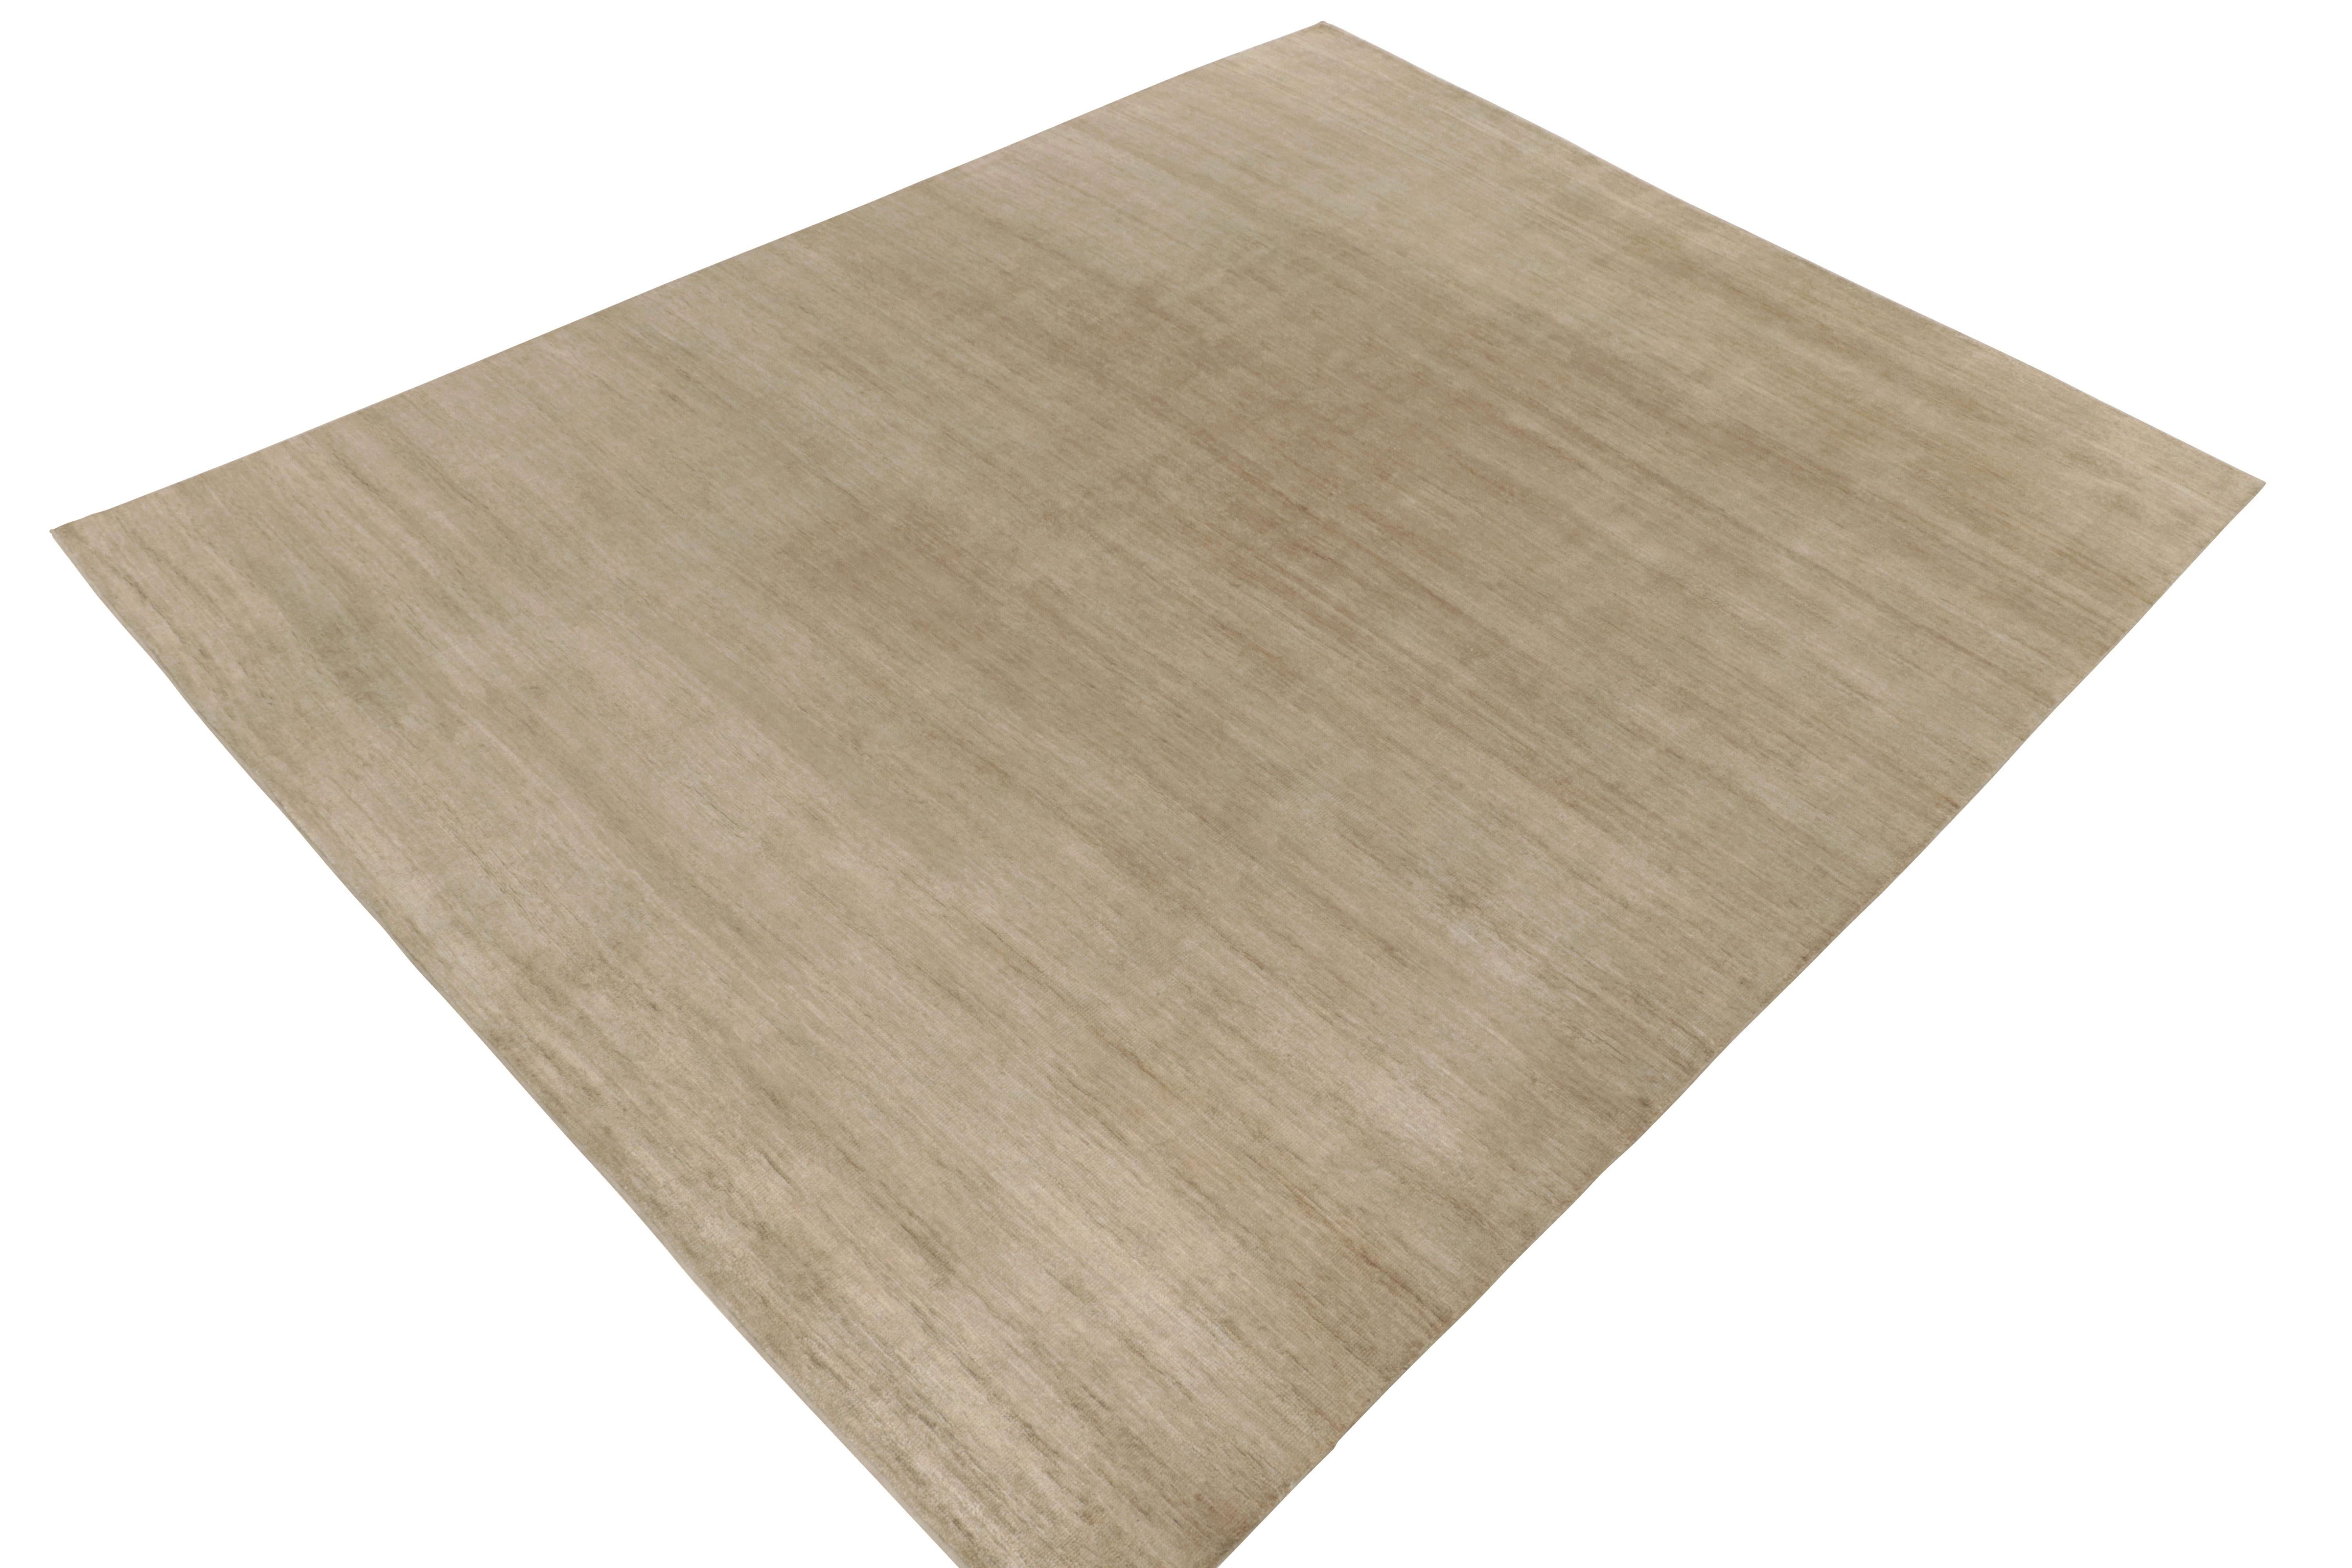 Un tapis 11x14 de la collection moderne Texture of Color de Rug & Kilim. Le tapis a une personnalité réfléchie avec des tons beige-brun unis, avec un mélange complexe de fils pour une approche polyvalente des stries. Noué à la main en soie, ce